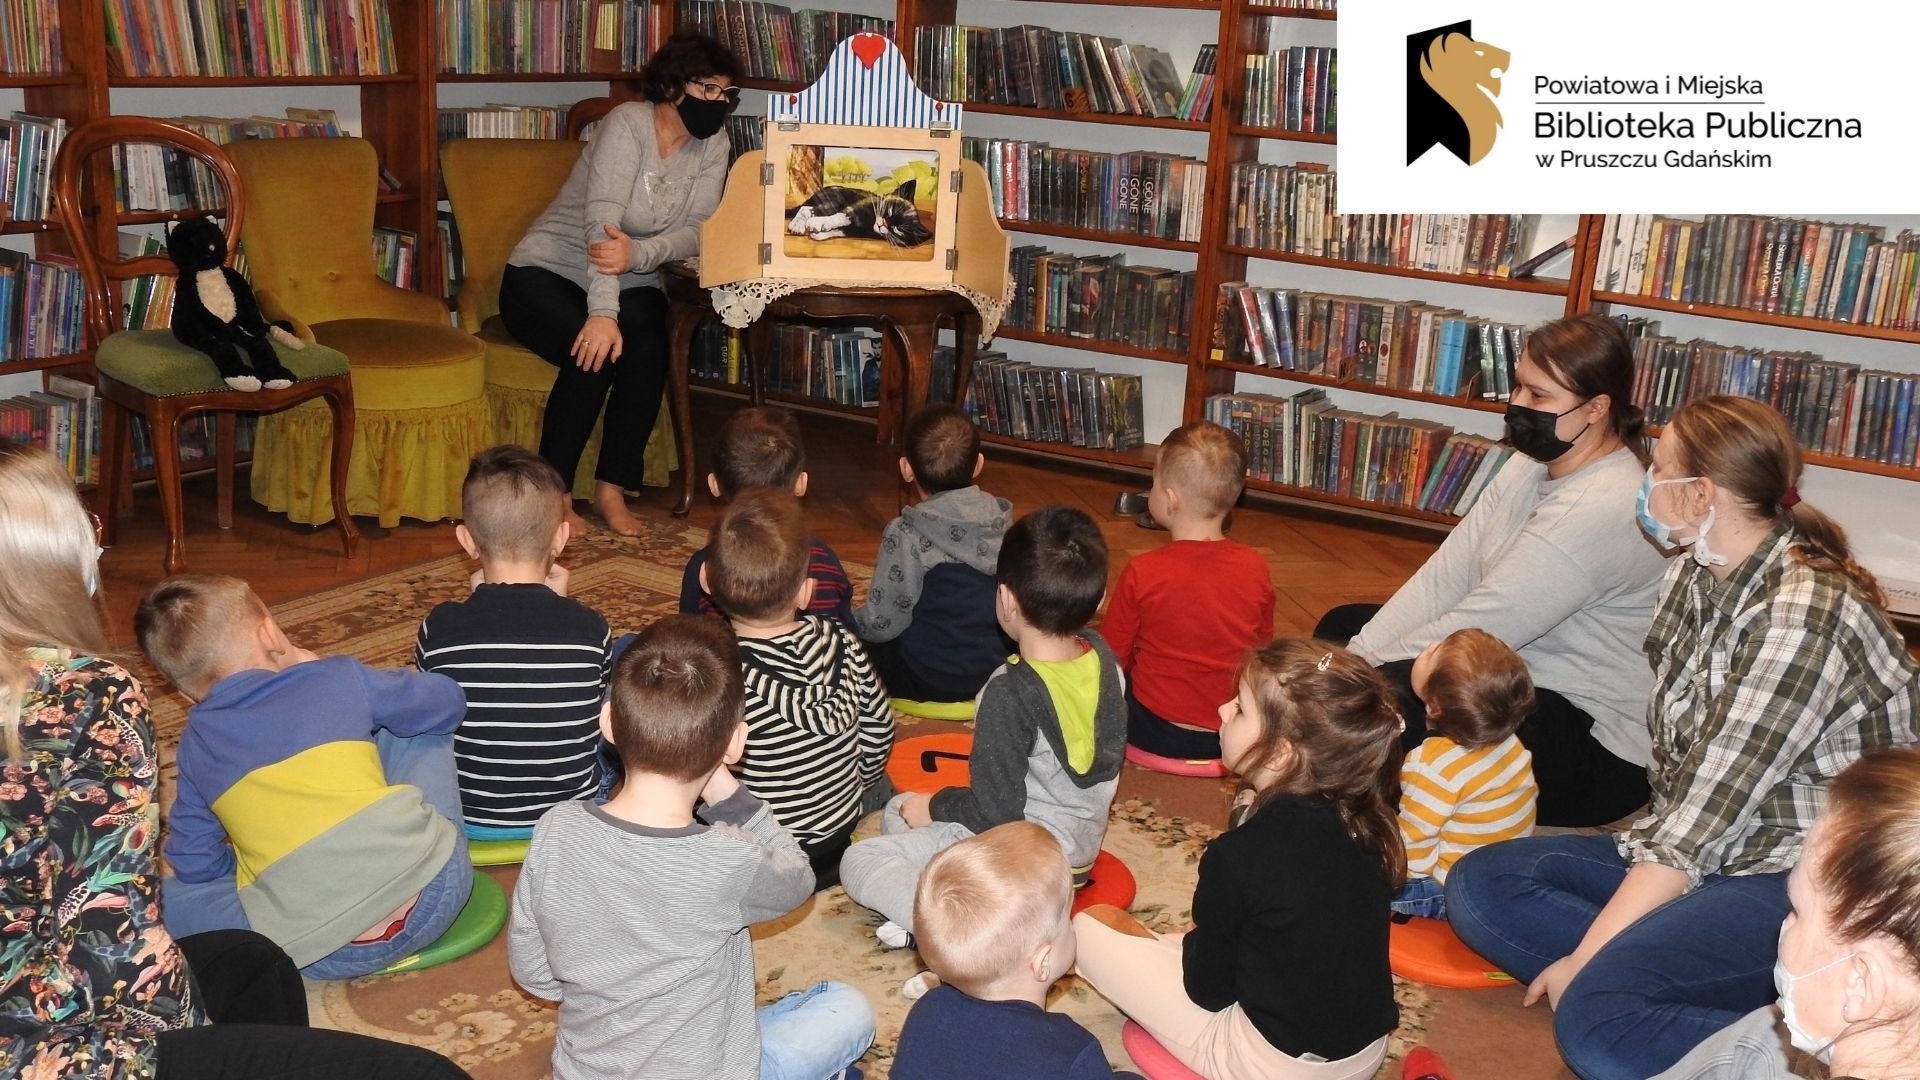 Dzieci siedzą na dywanie zwrócone w stronę osoby dorosłej, obok której stoi drewniana skrzynka z ilustracją w środku. Za nimi regały z książkami